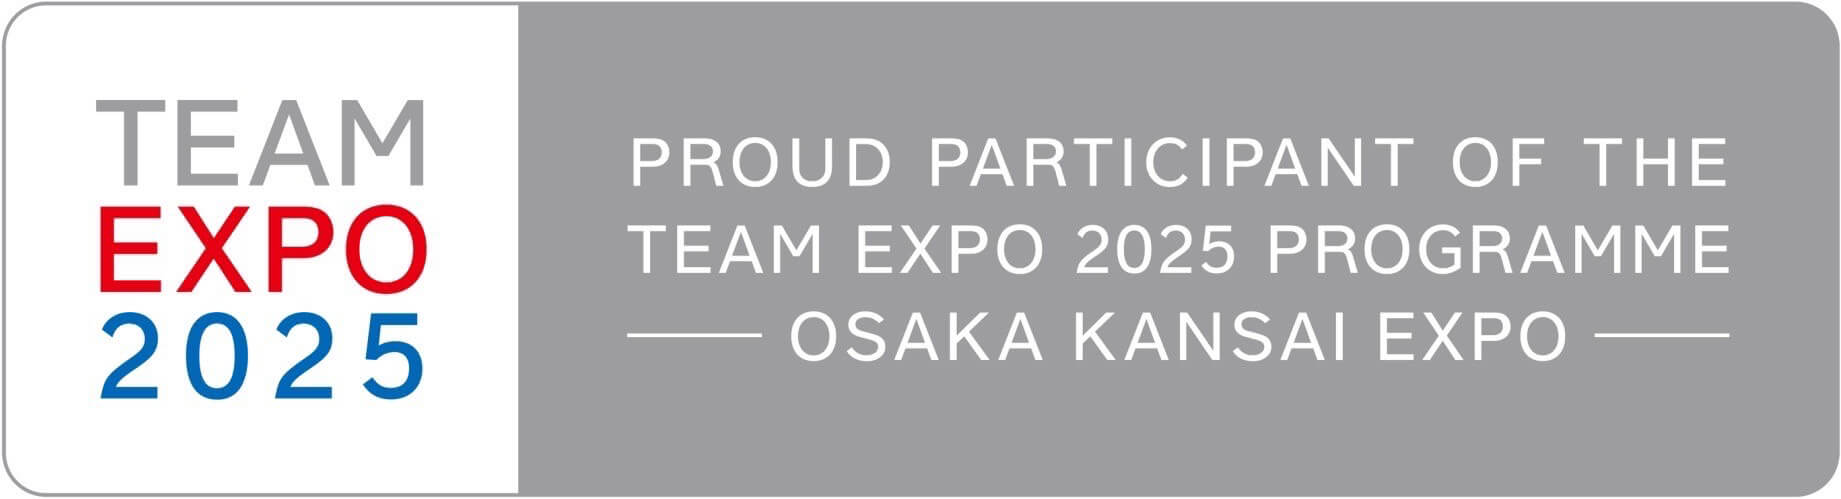 わたしたちは、大阪・関西万博TEAMEXPO2025プログラムに参加しています